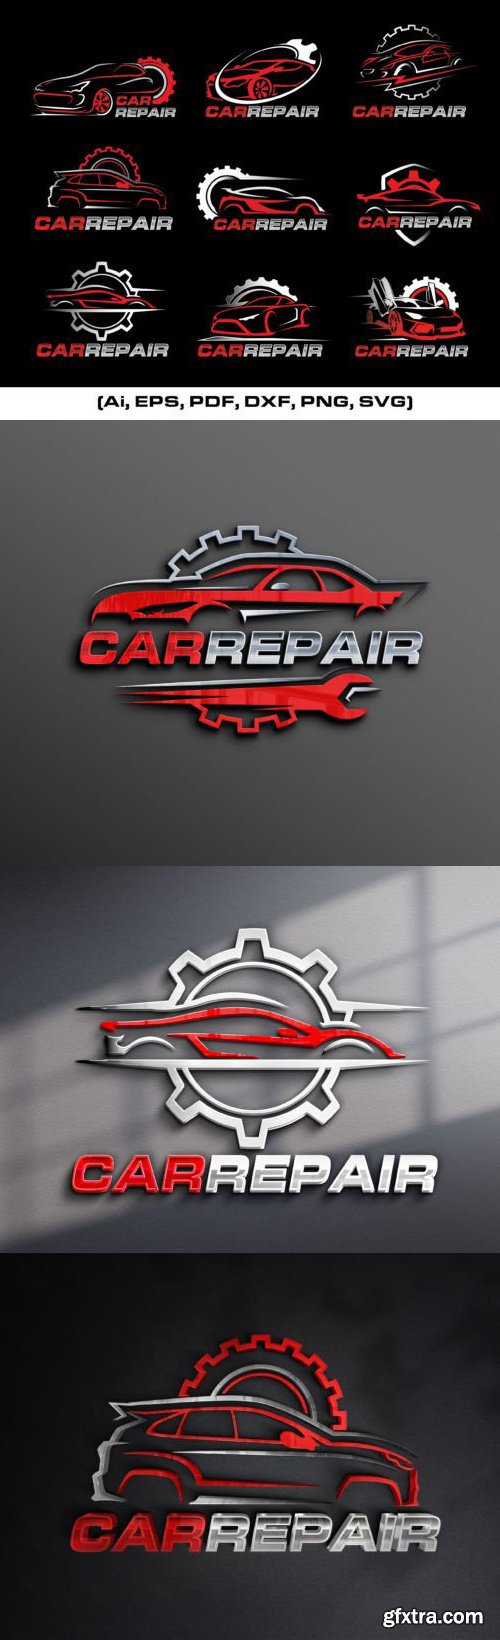 Car Repair - Vector Logo Templates Bundle